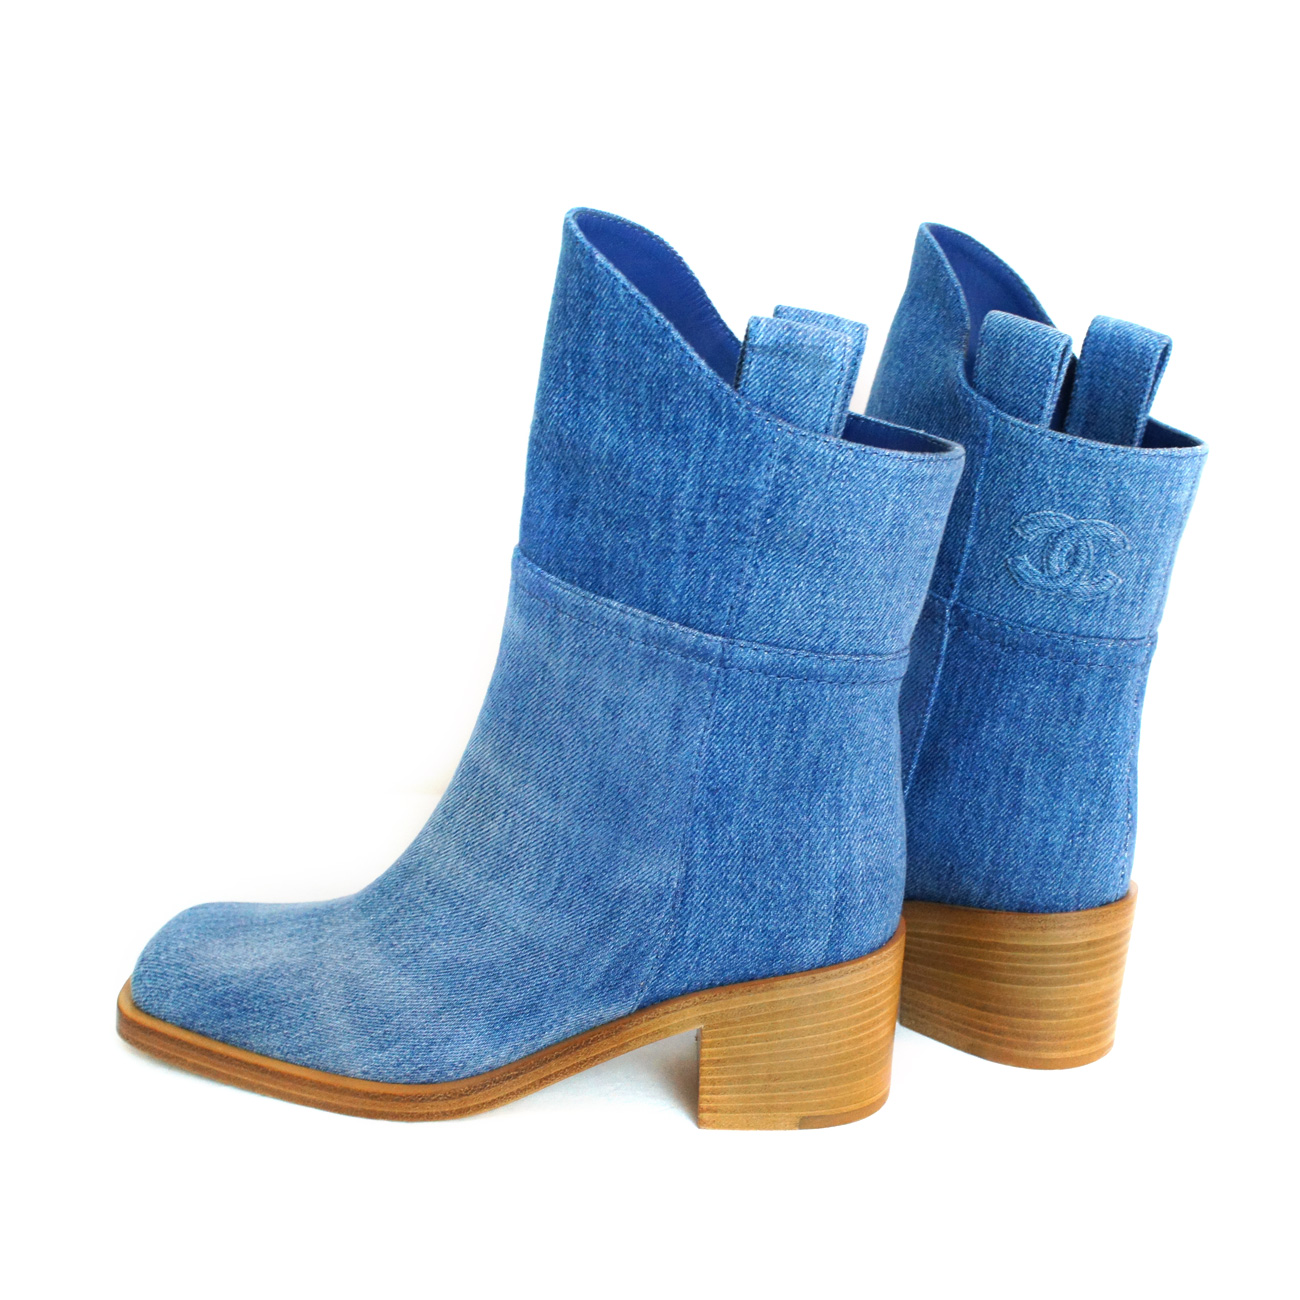 Women's :: Women's Shoes :: Boots :: CHANEL New CC stitch wooden sole short  denim boots / 100% authentic